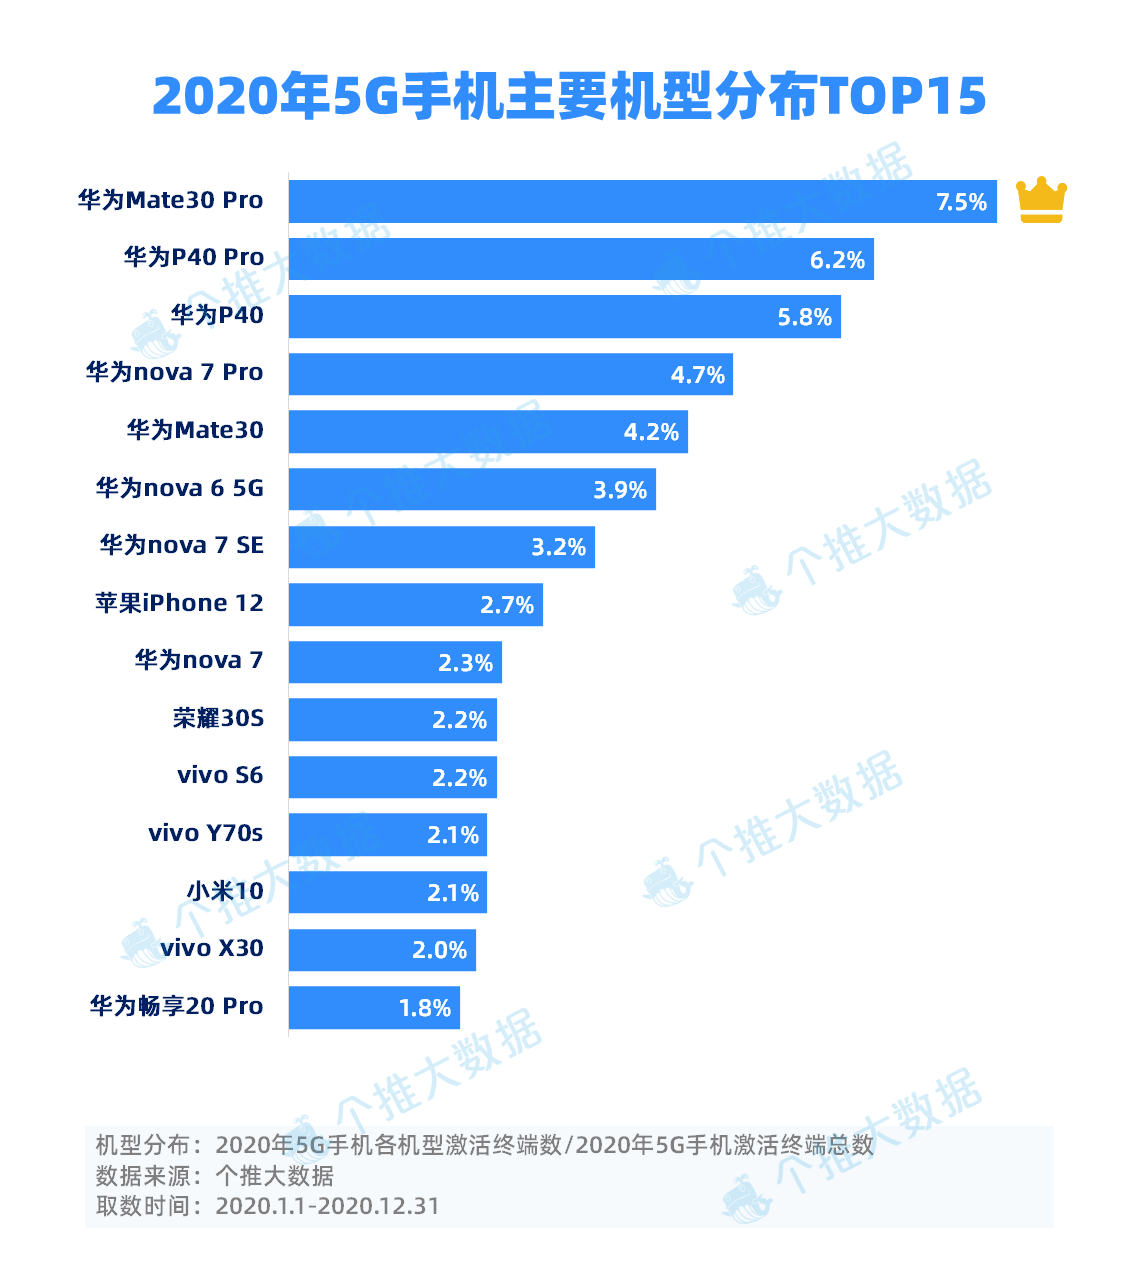 3-2020年5G手机主要机型分布TOP15.png